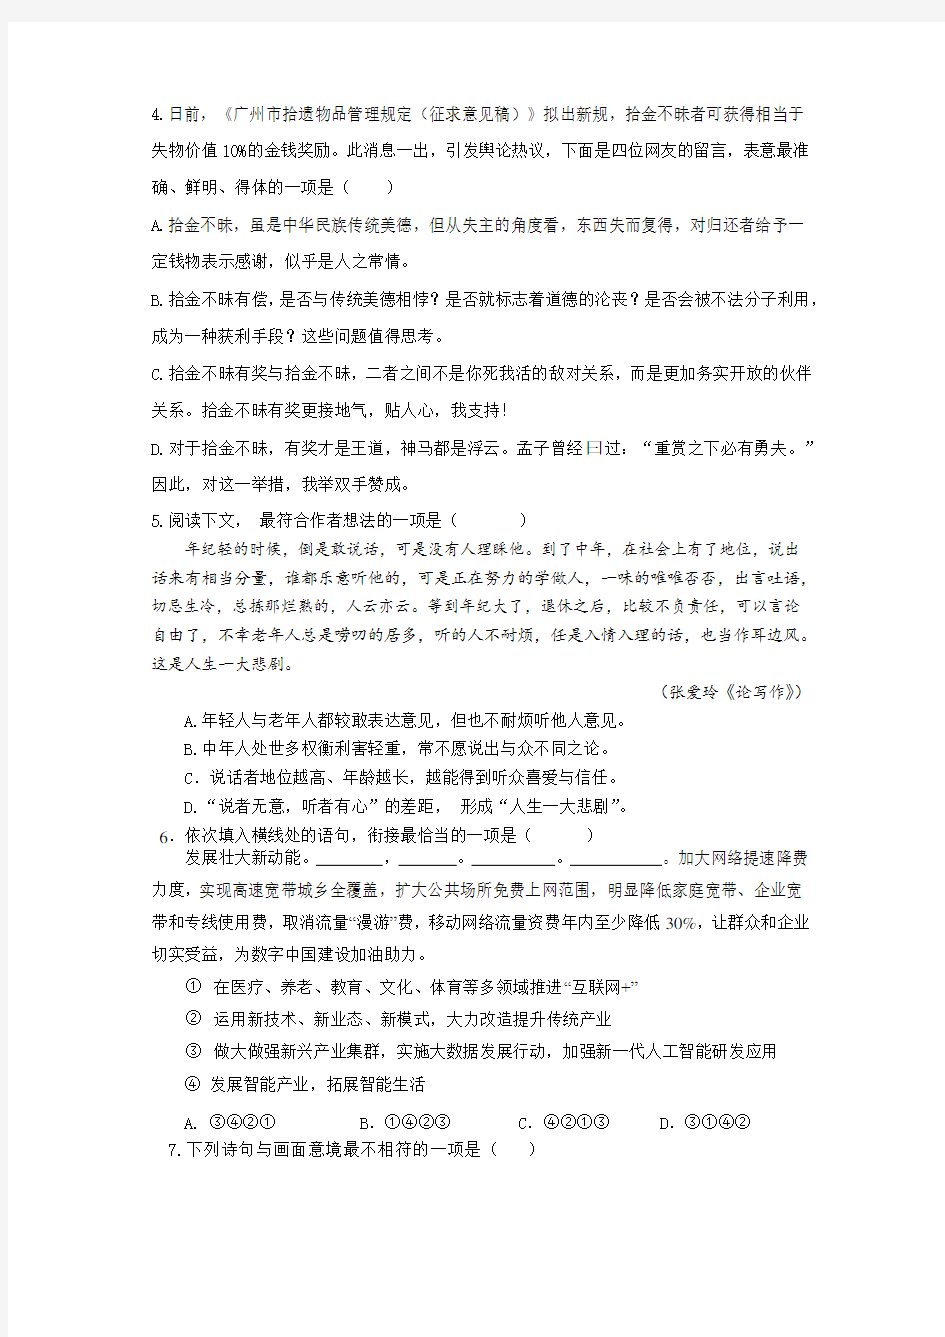 (完整版)2019年浙江省高职考语文模拟试卷及详细答案